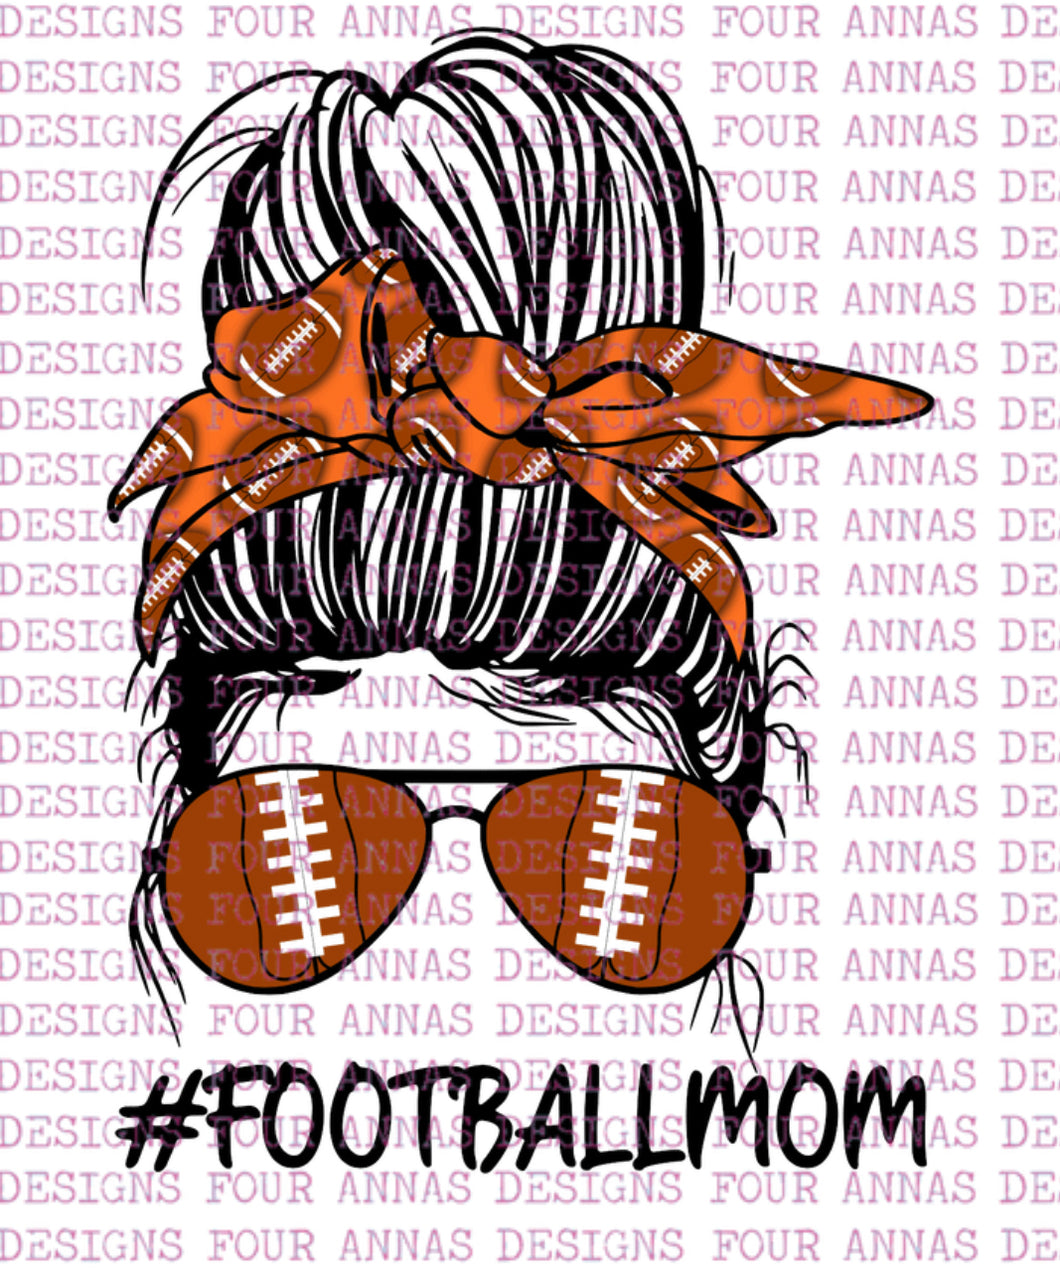 Football mom orange